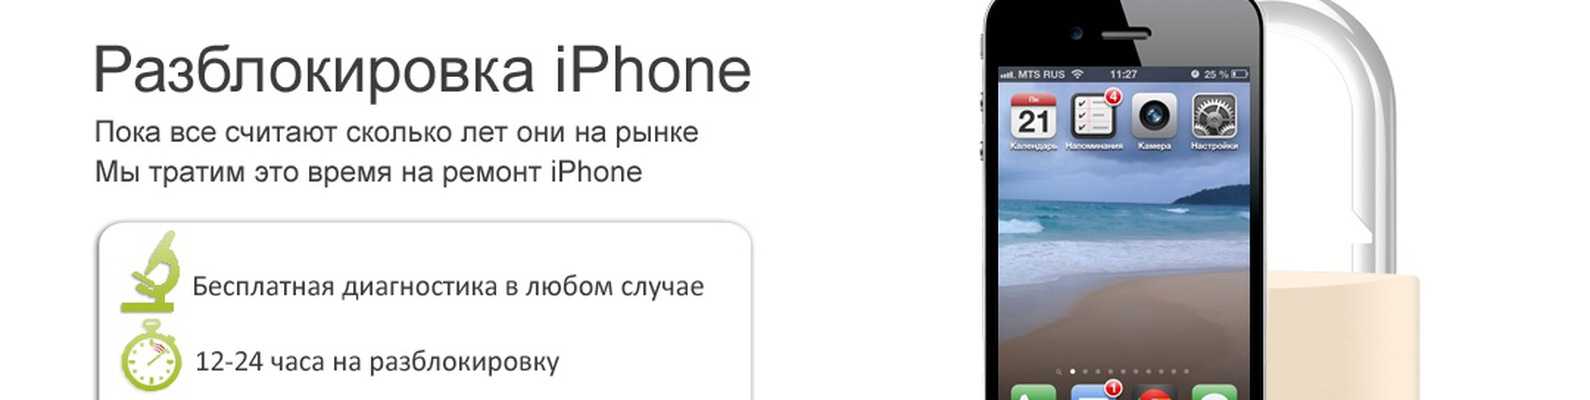 Как настроить айклауд на айфоне - подробная инструкция тарифкин.ру
как настроить айклауд на айфоне - подробная инструкция